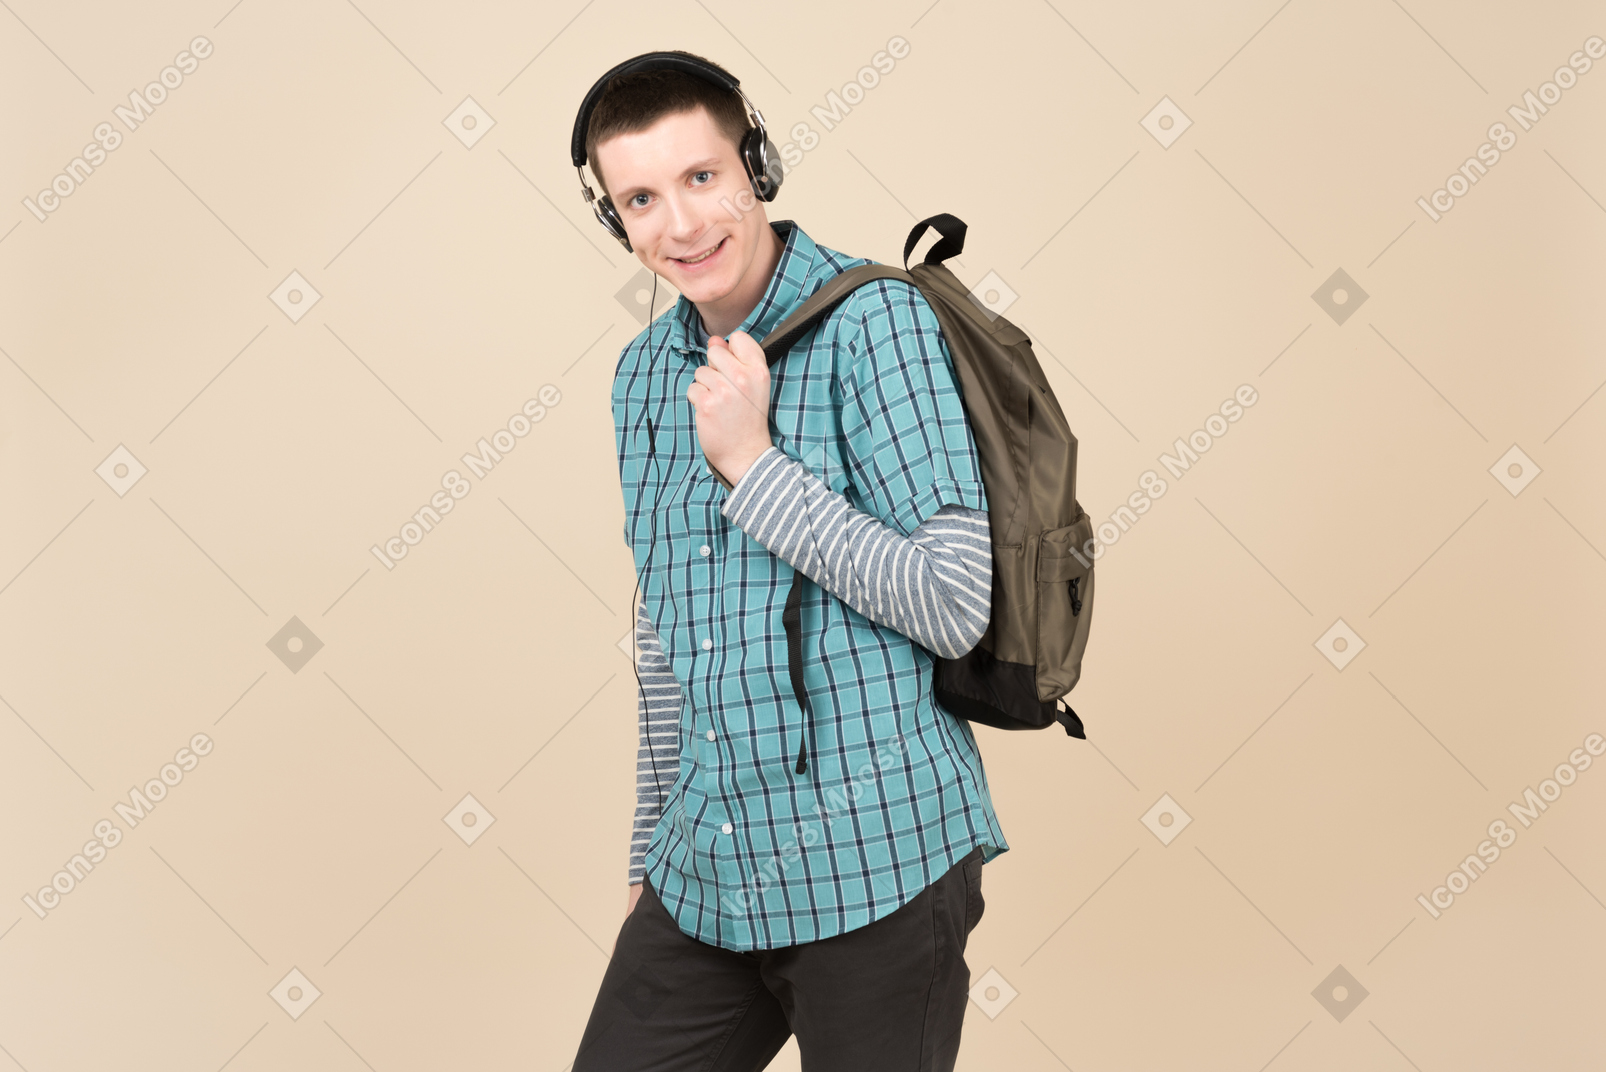 Student, der mit einem rucksack und kopfhörern steht